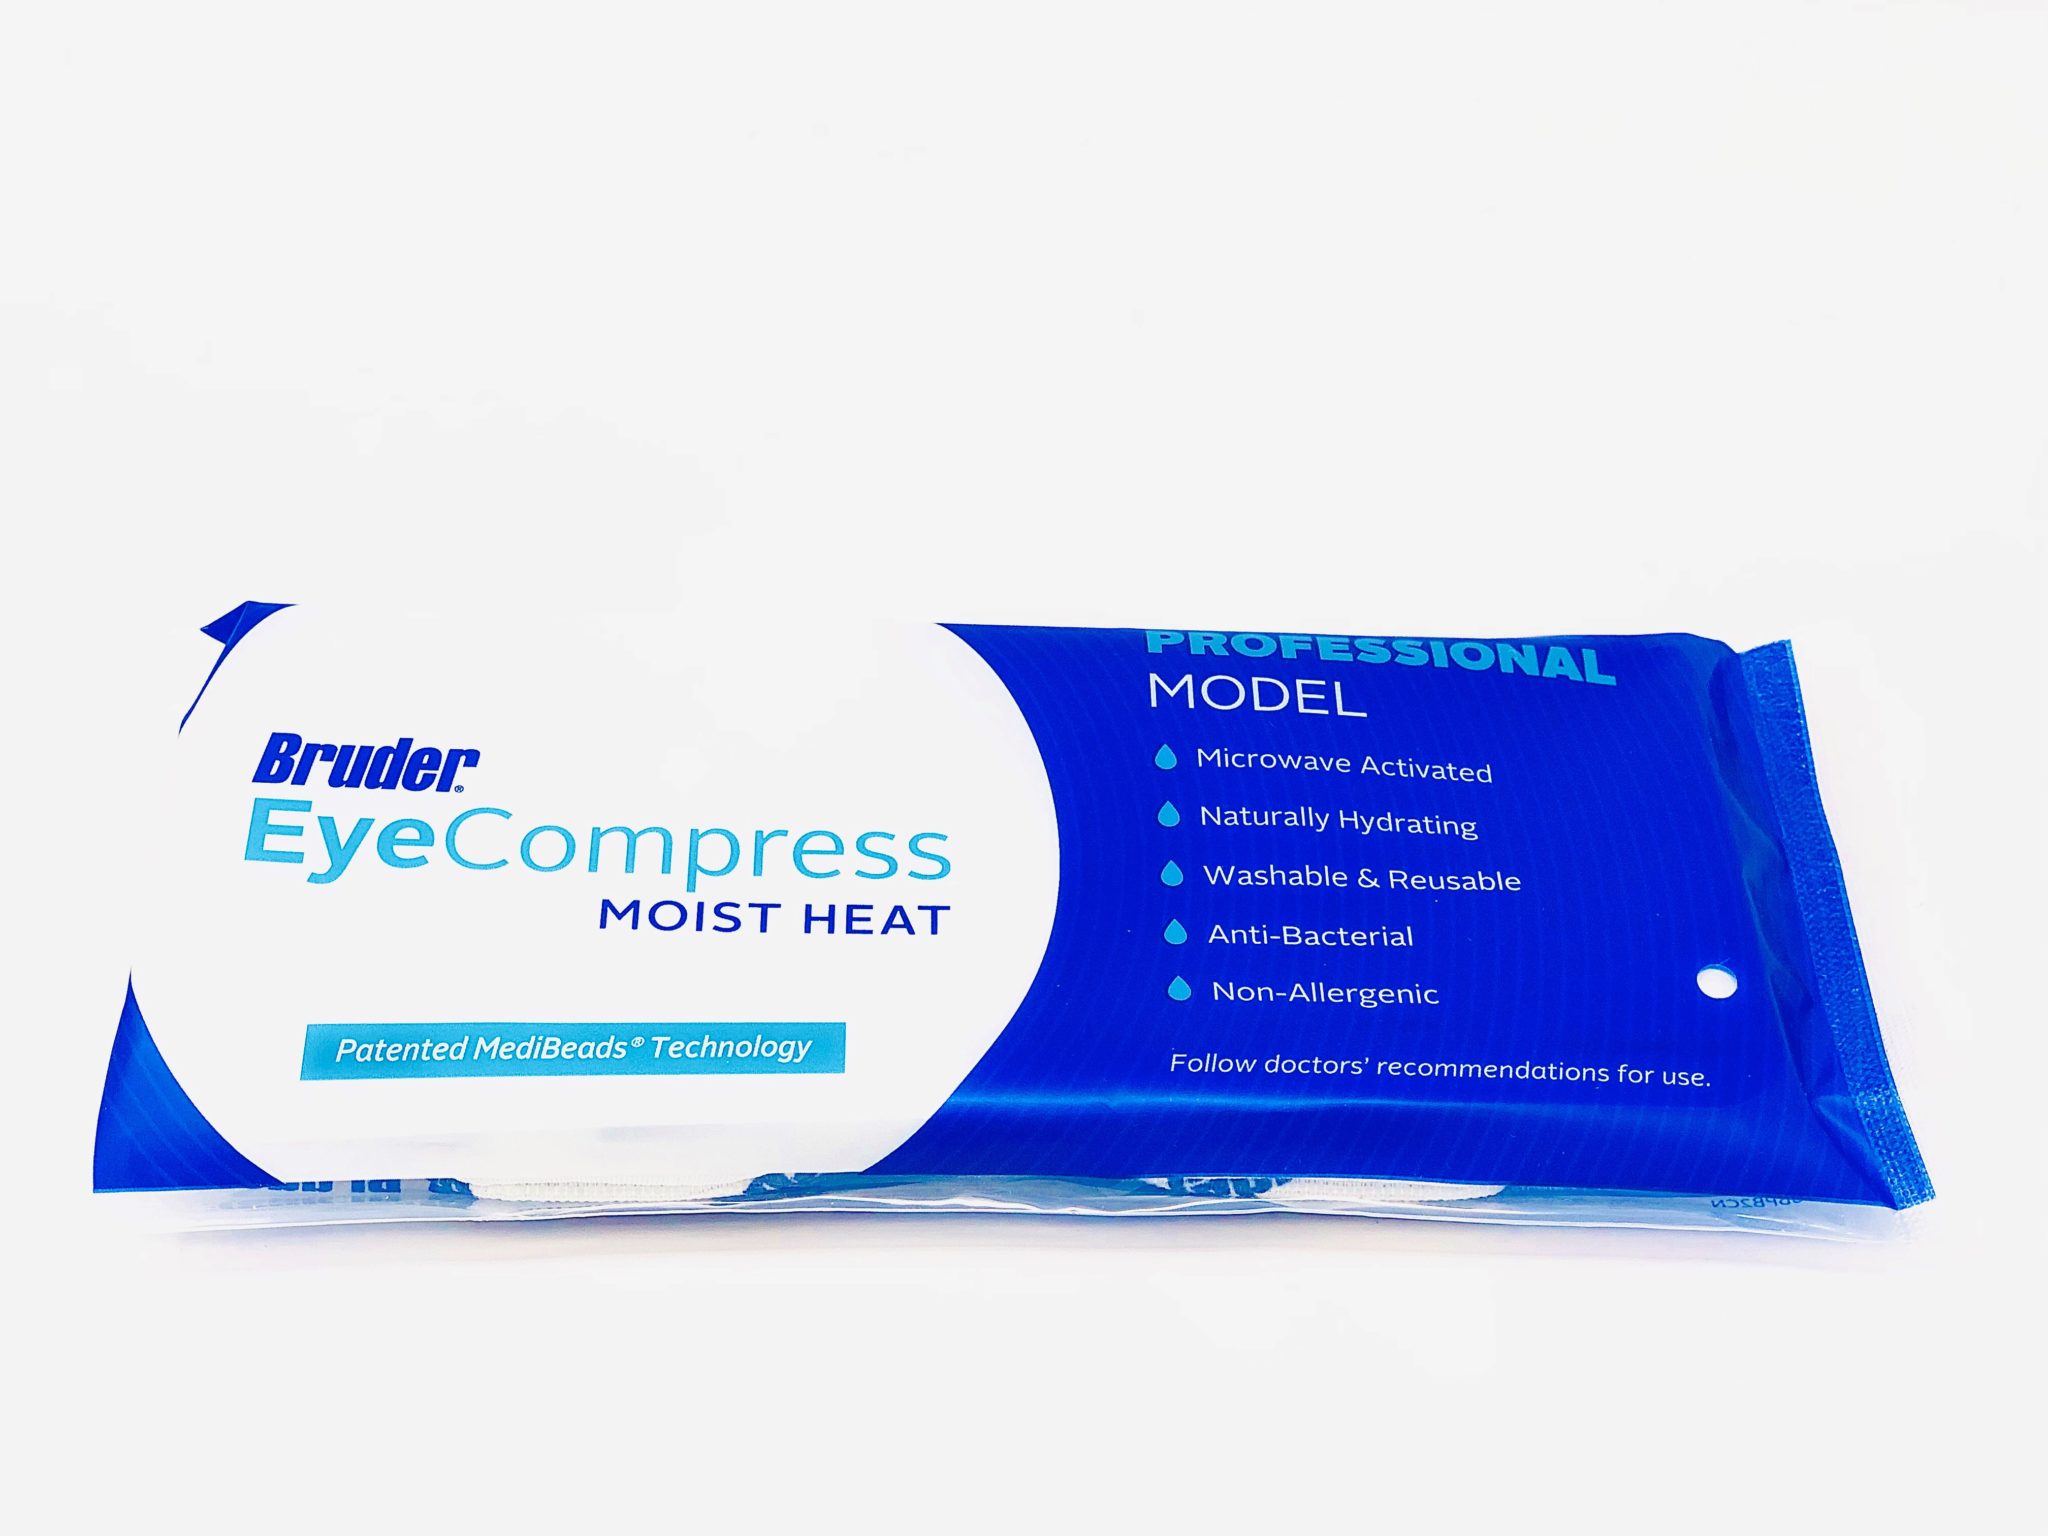 bruder moist heat eye compress reviews